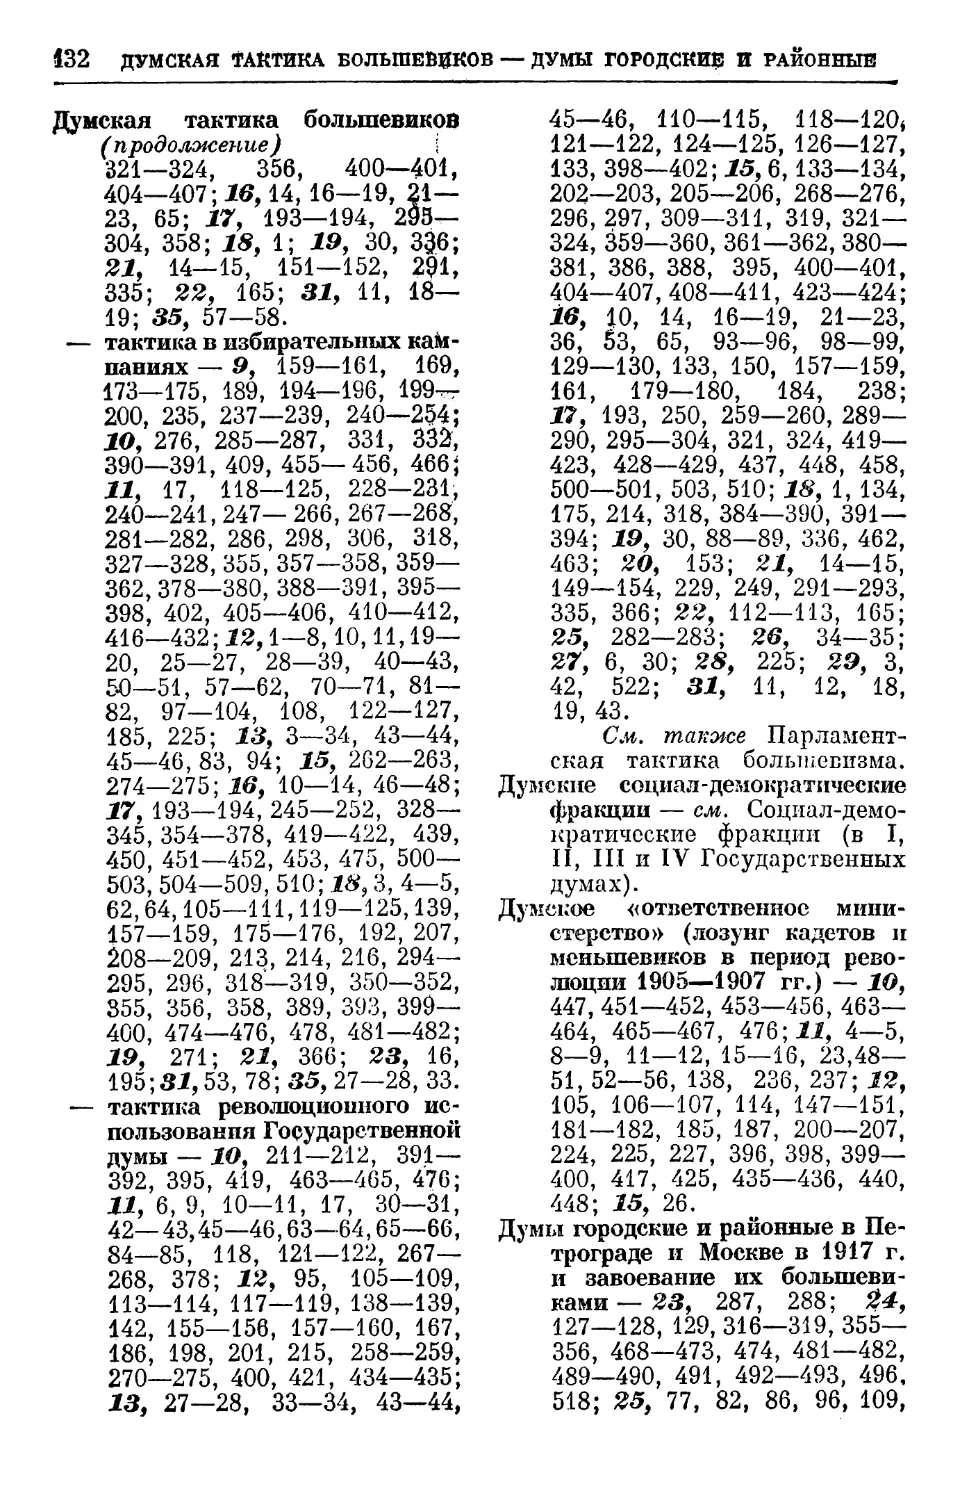 Думские социал-демократические фракции
Думы городские и районные в Петрограде и Москве в 1917 г. и завоевание их большевиками